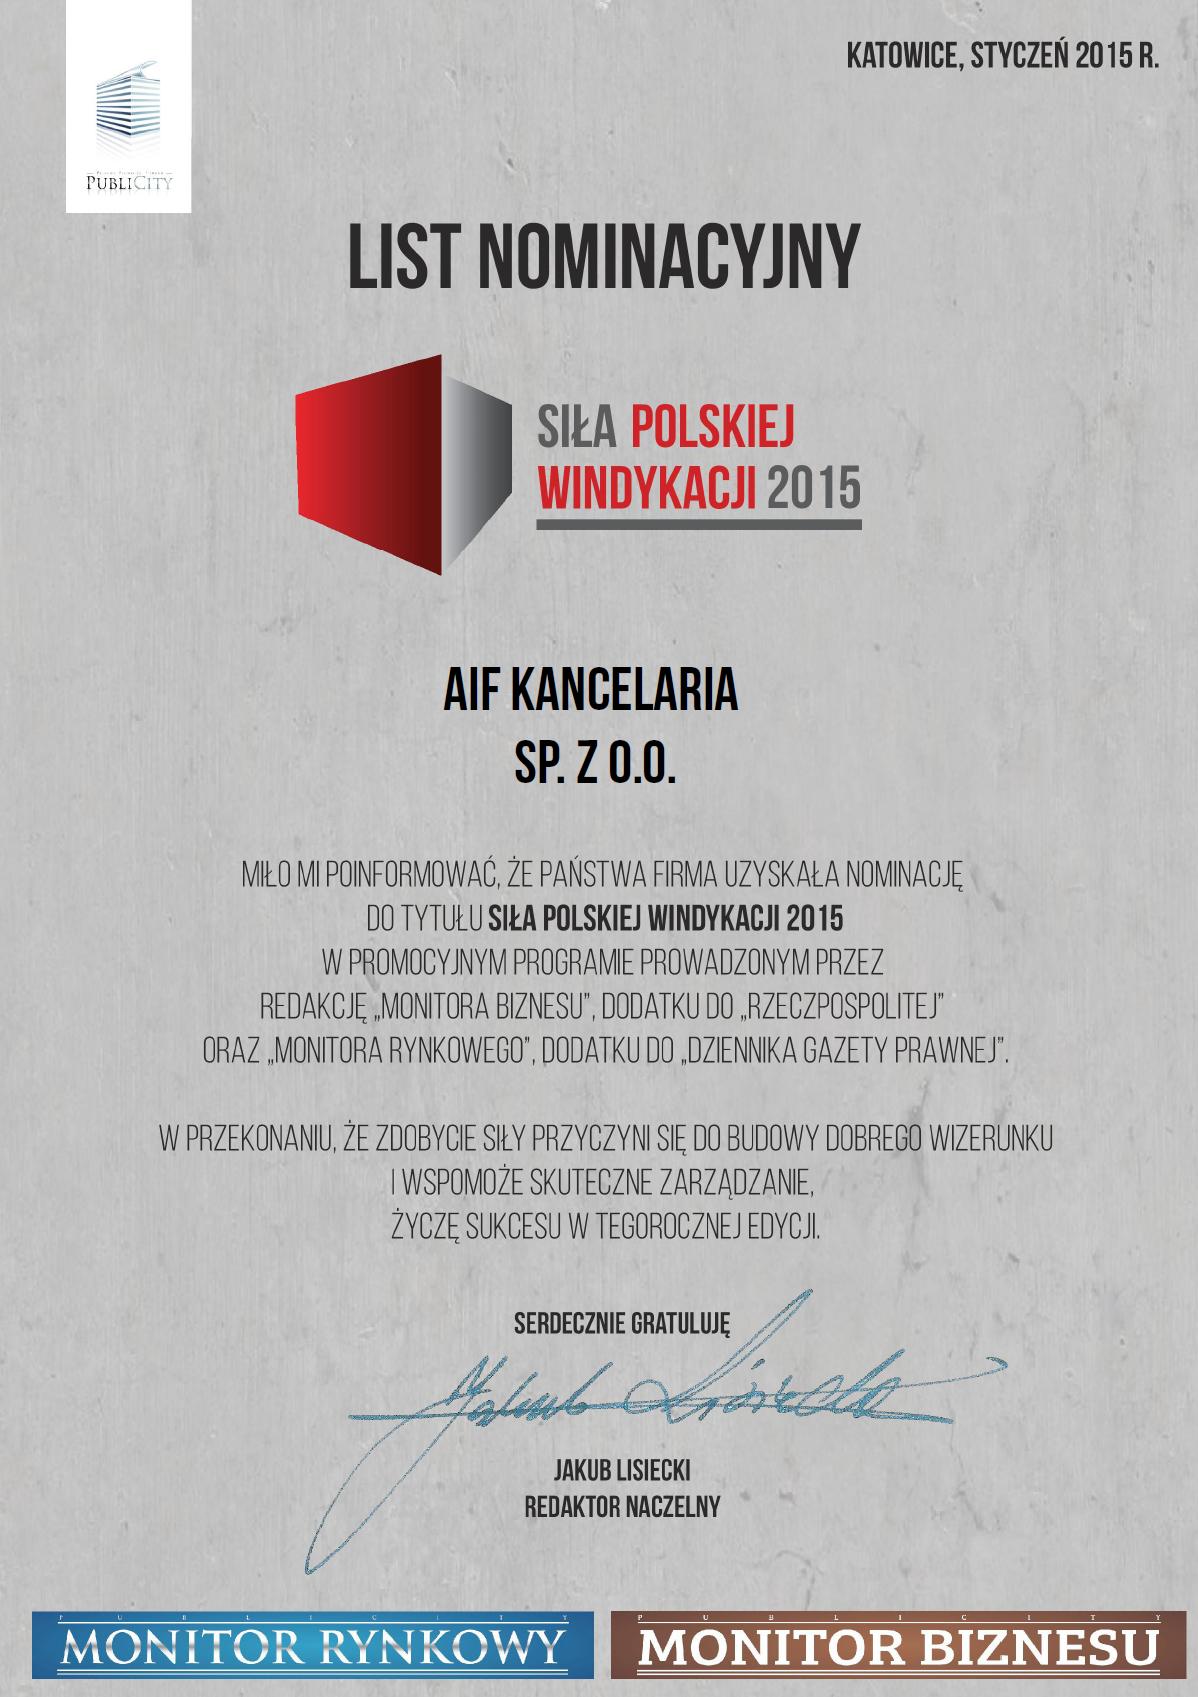 Siła Polskiej Windykacji 2015 list